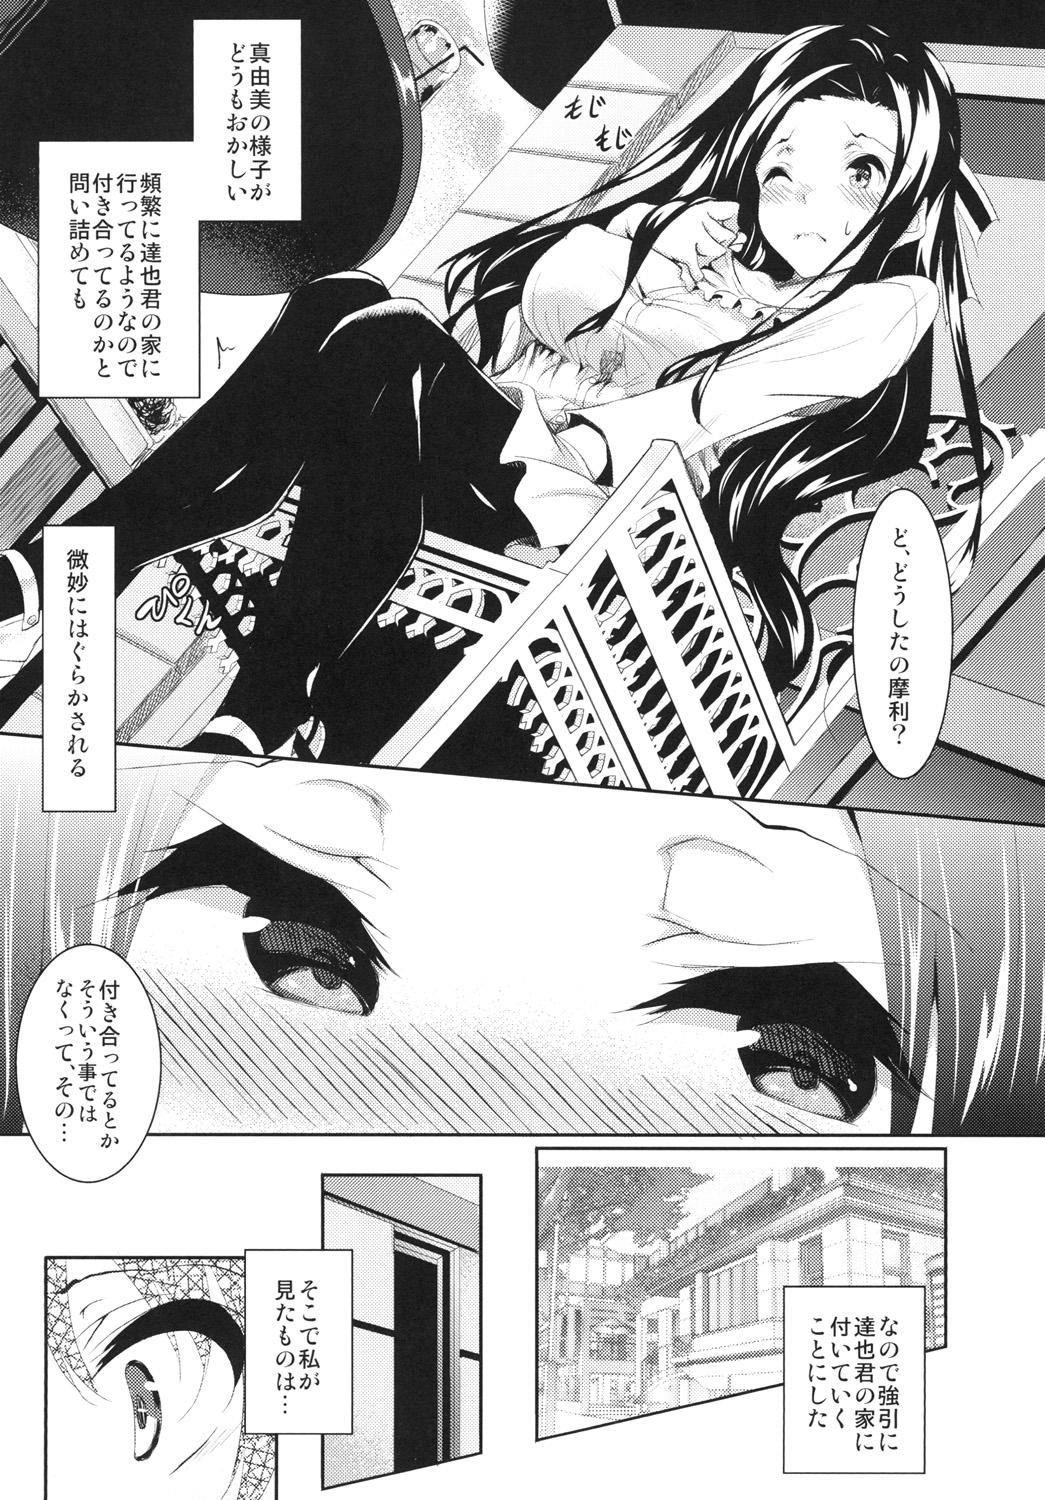 Young Old Sasuoni! 4 - Mahouka koukou no rettousei Hidden - Page 3